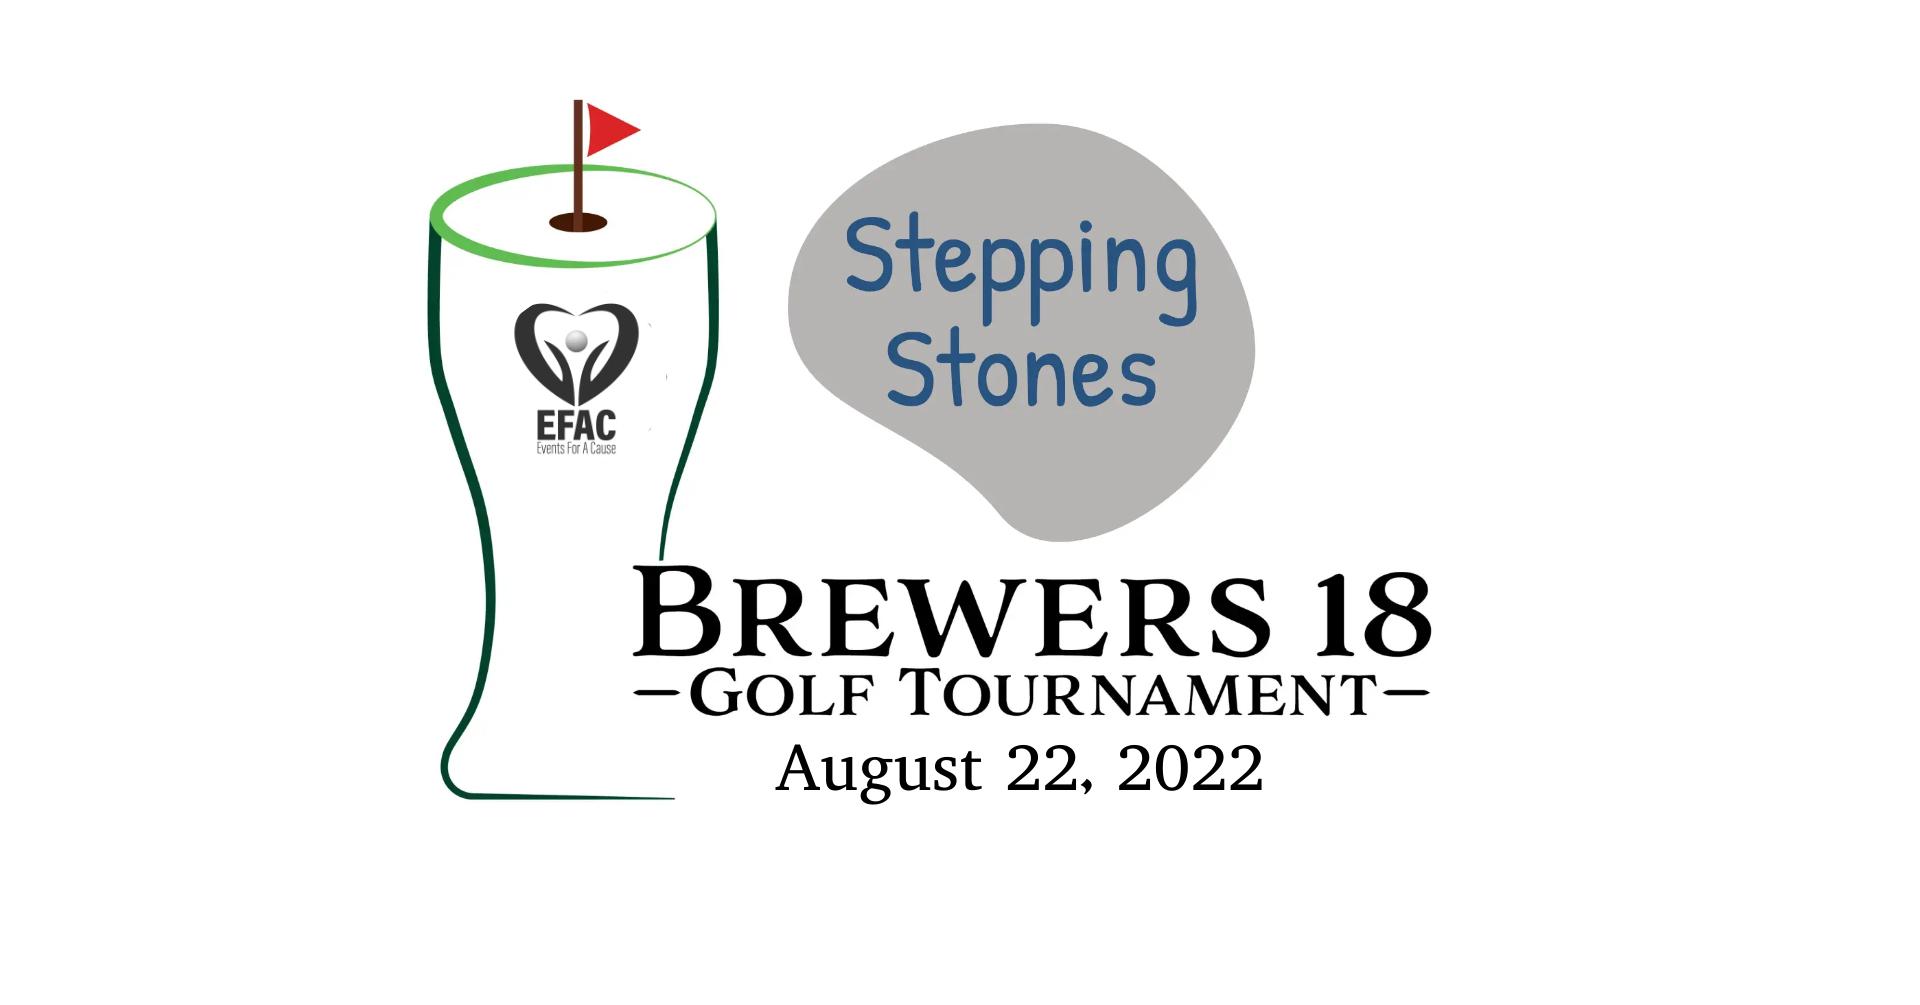 Brewers 18 Golf Tournament